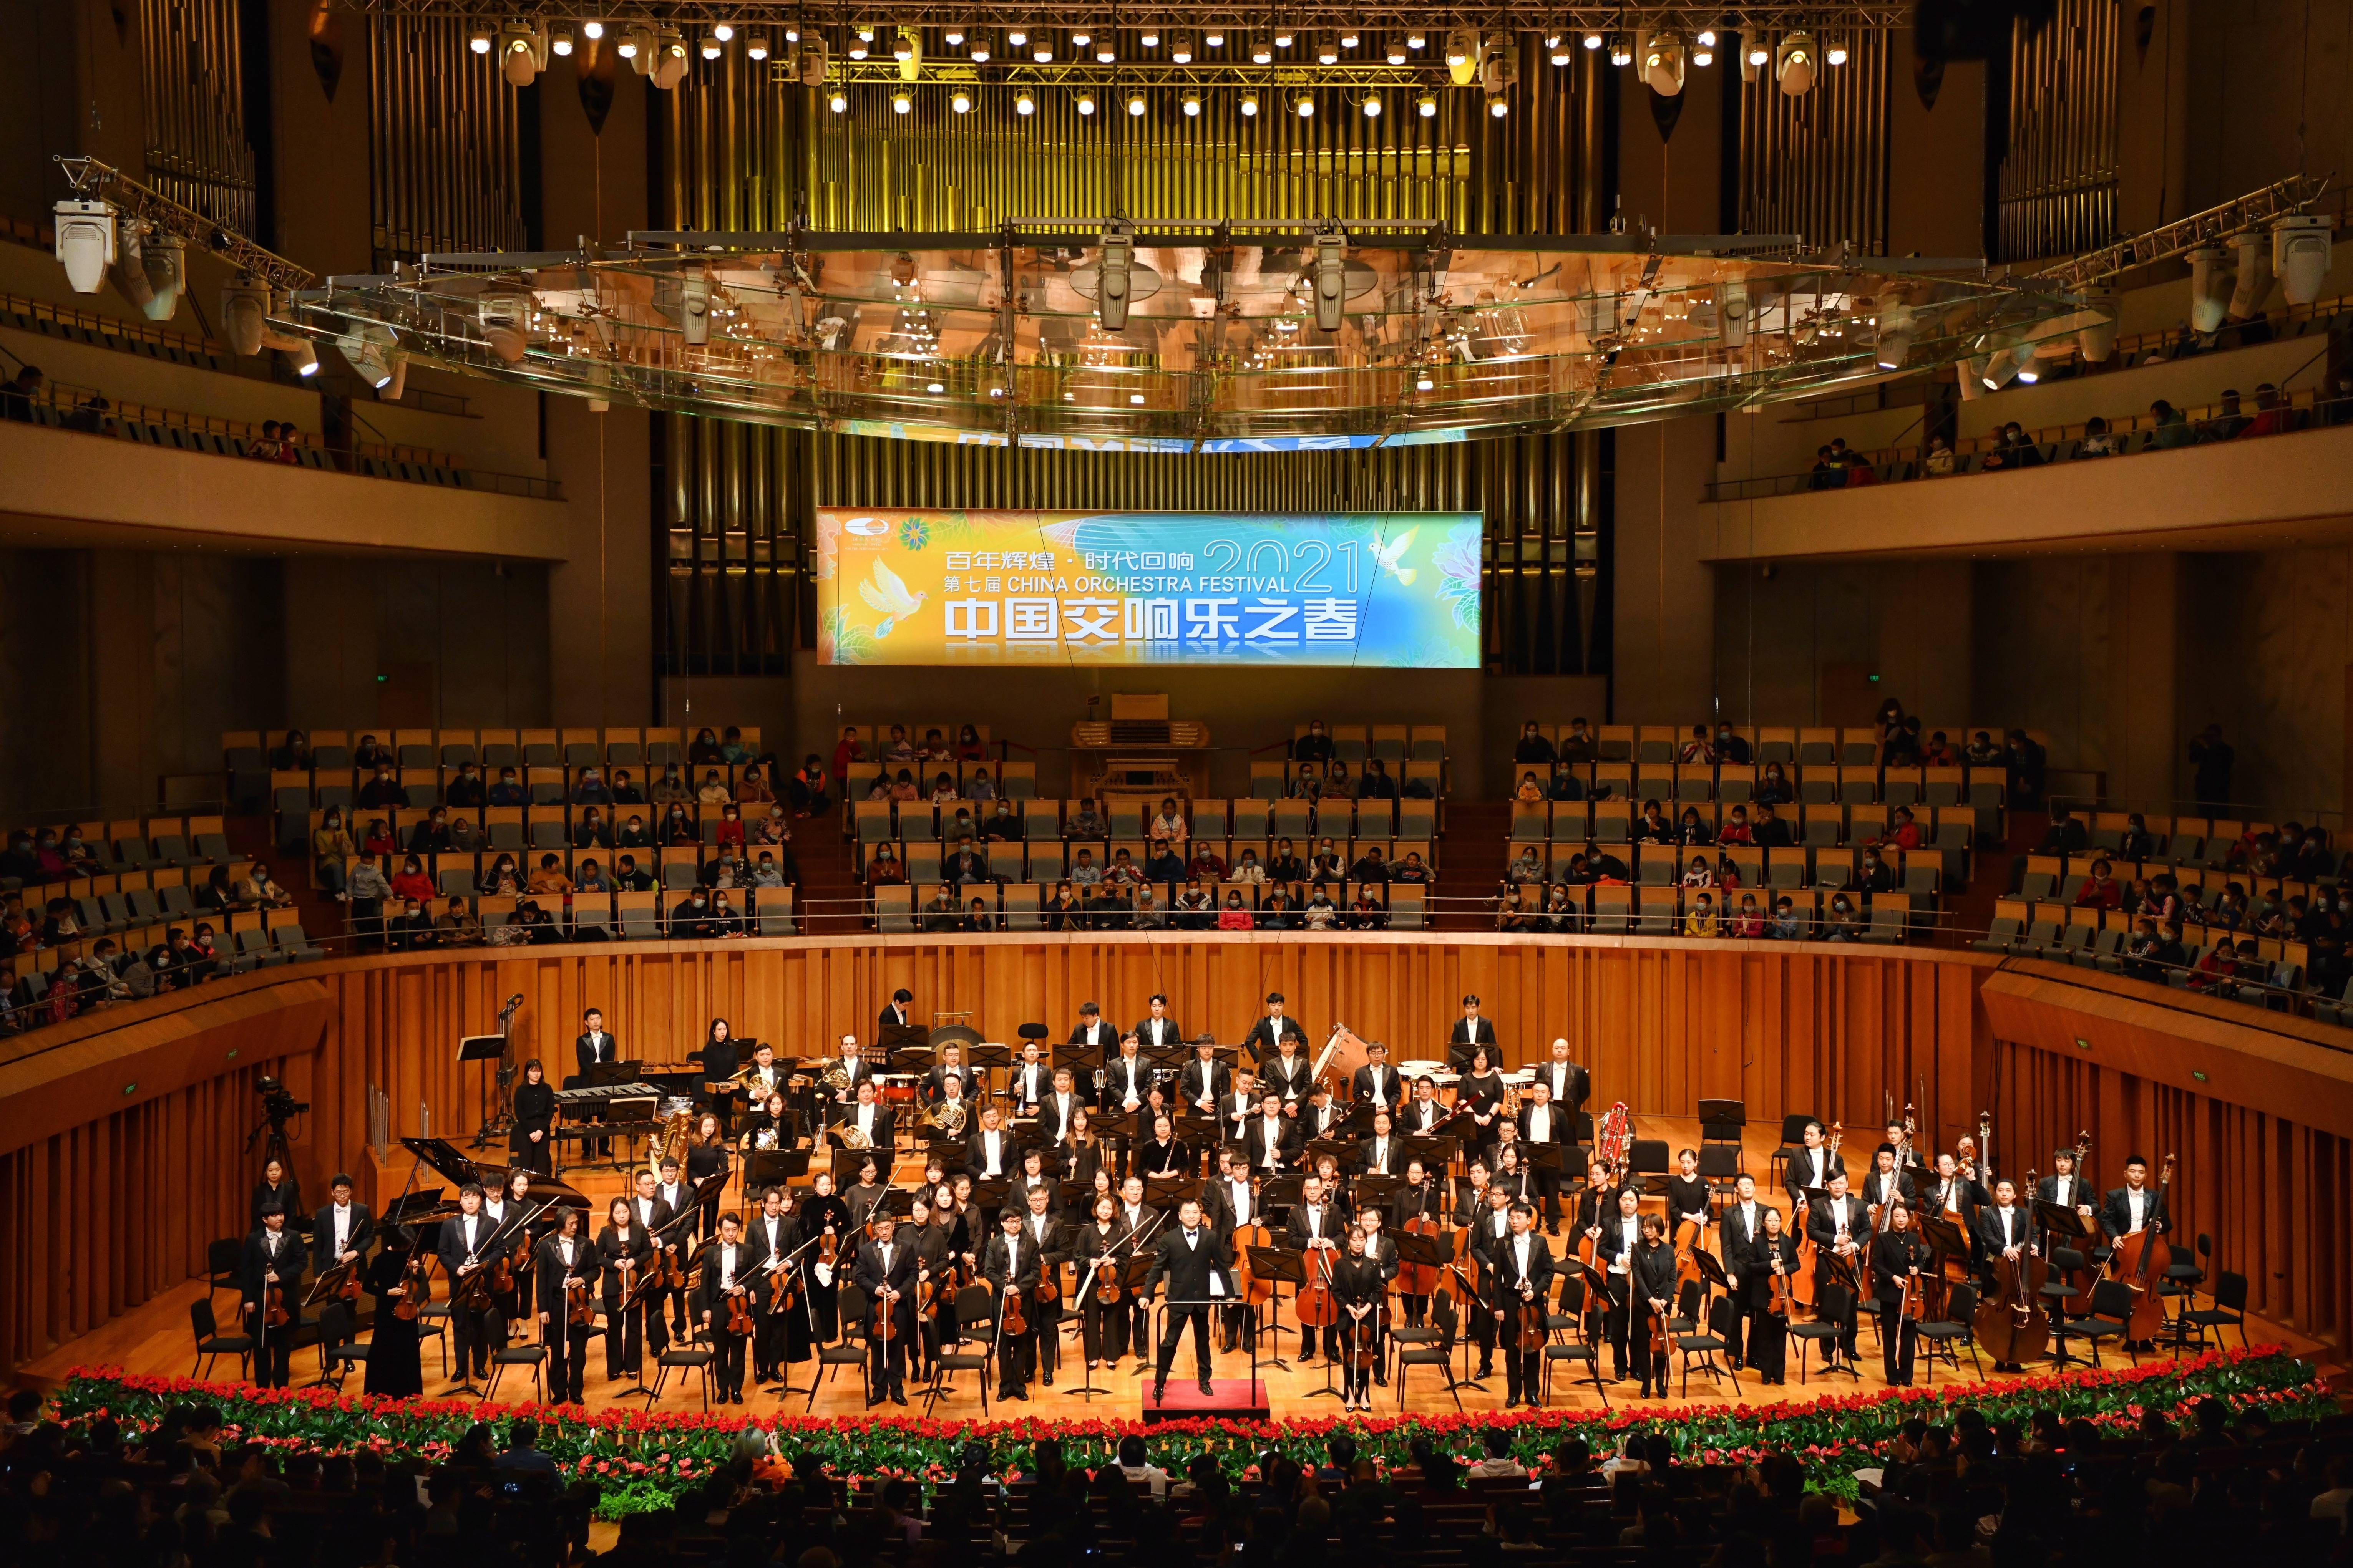 浙江交响乐团大型原创交响乐《大潮之上》在国家大剧院上演